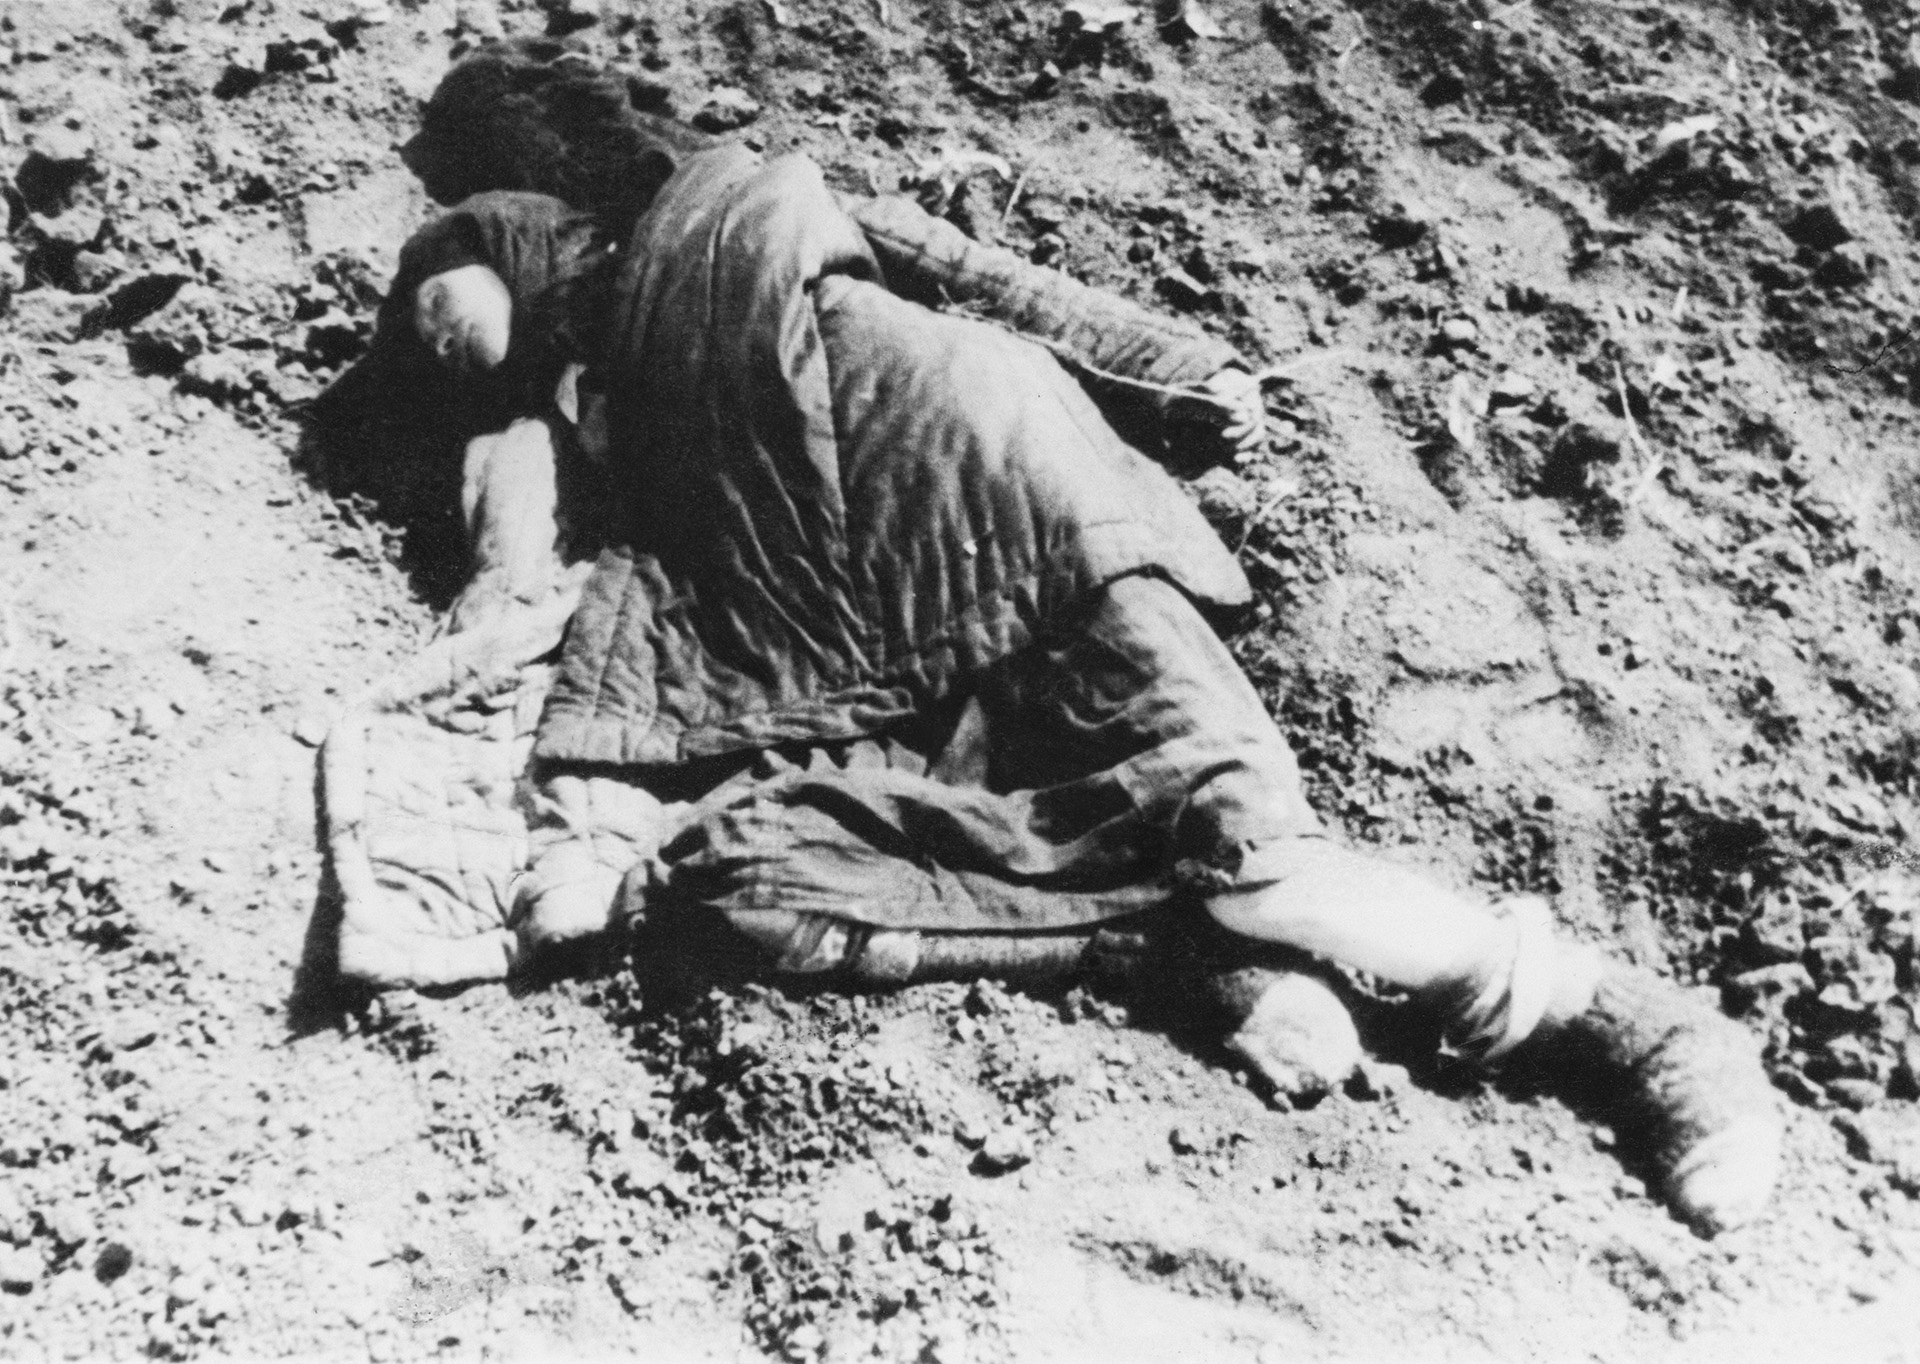 1934. El cadáver de una mujer joven, cerca de Poltava, durante la hambruna artificial diseñada por Stalin en Ucrania, cuando pertenecía a la ex Unión Soviética (Photo by Daily Express/Hulton Archive/Getty Images)